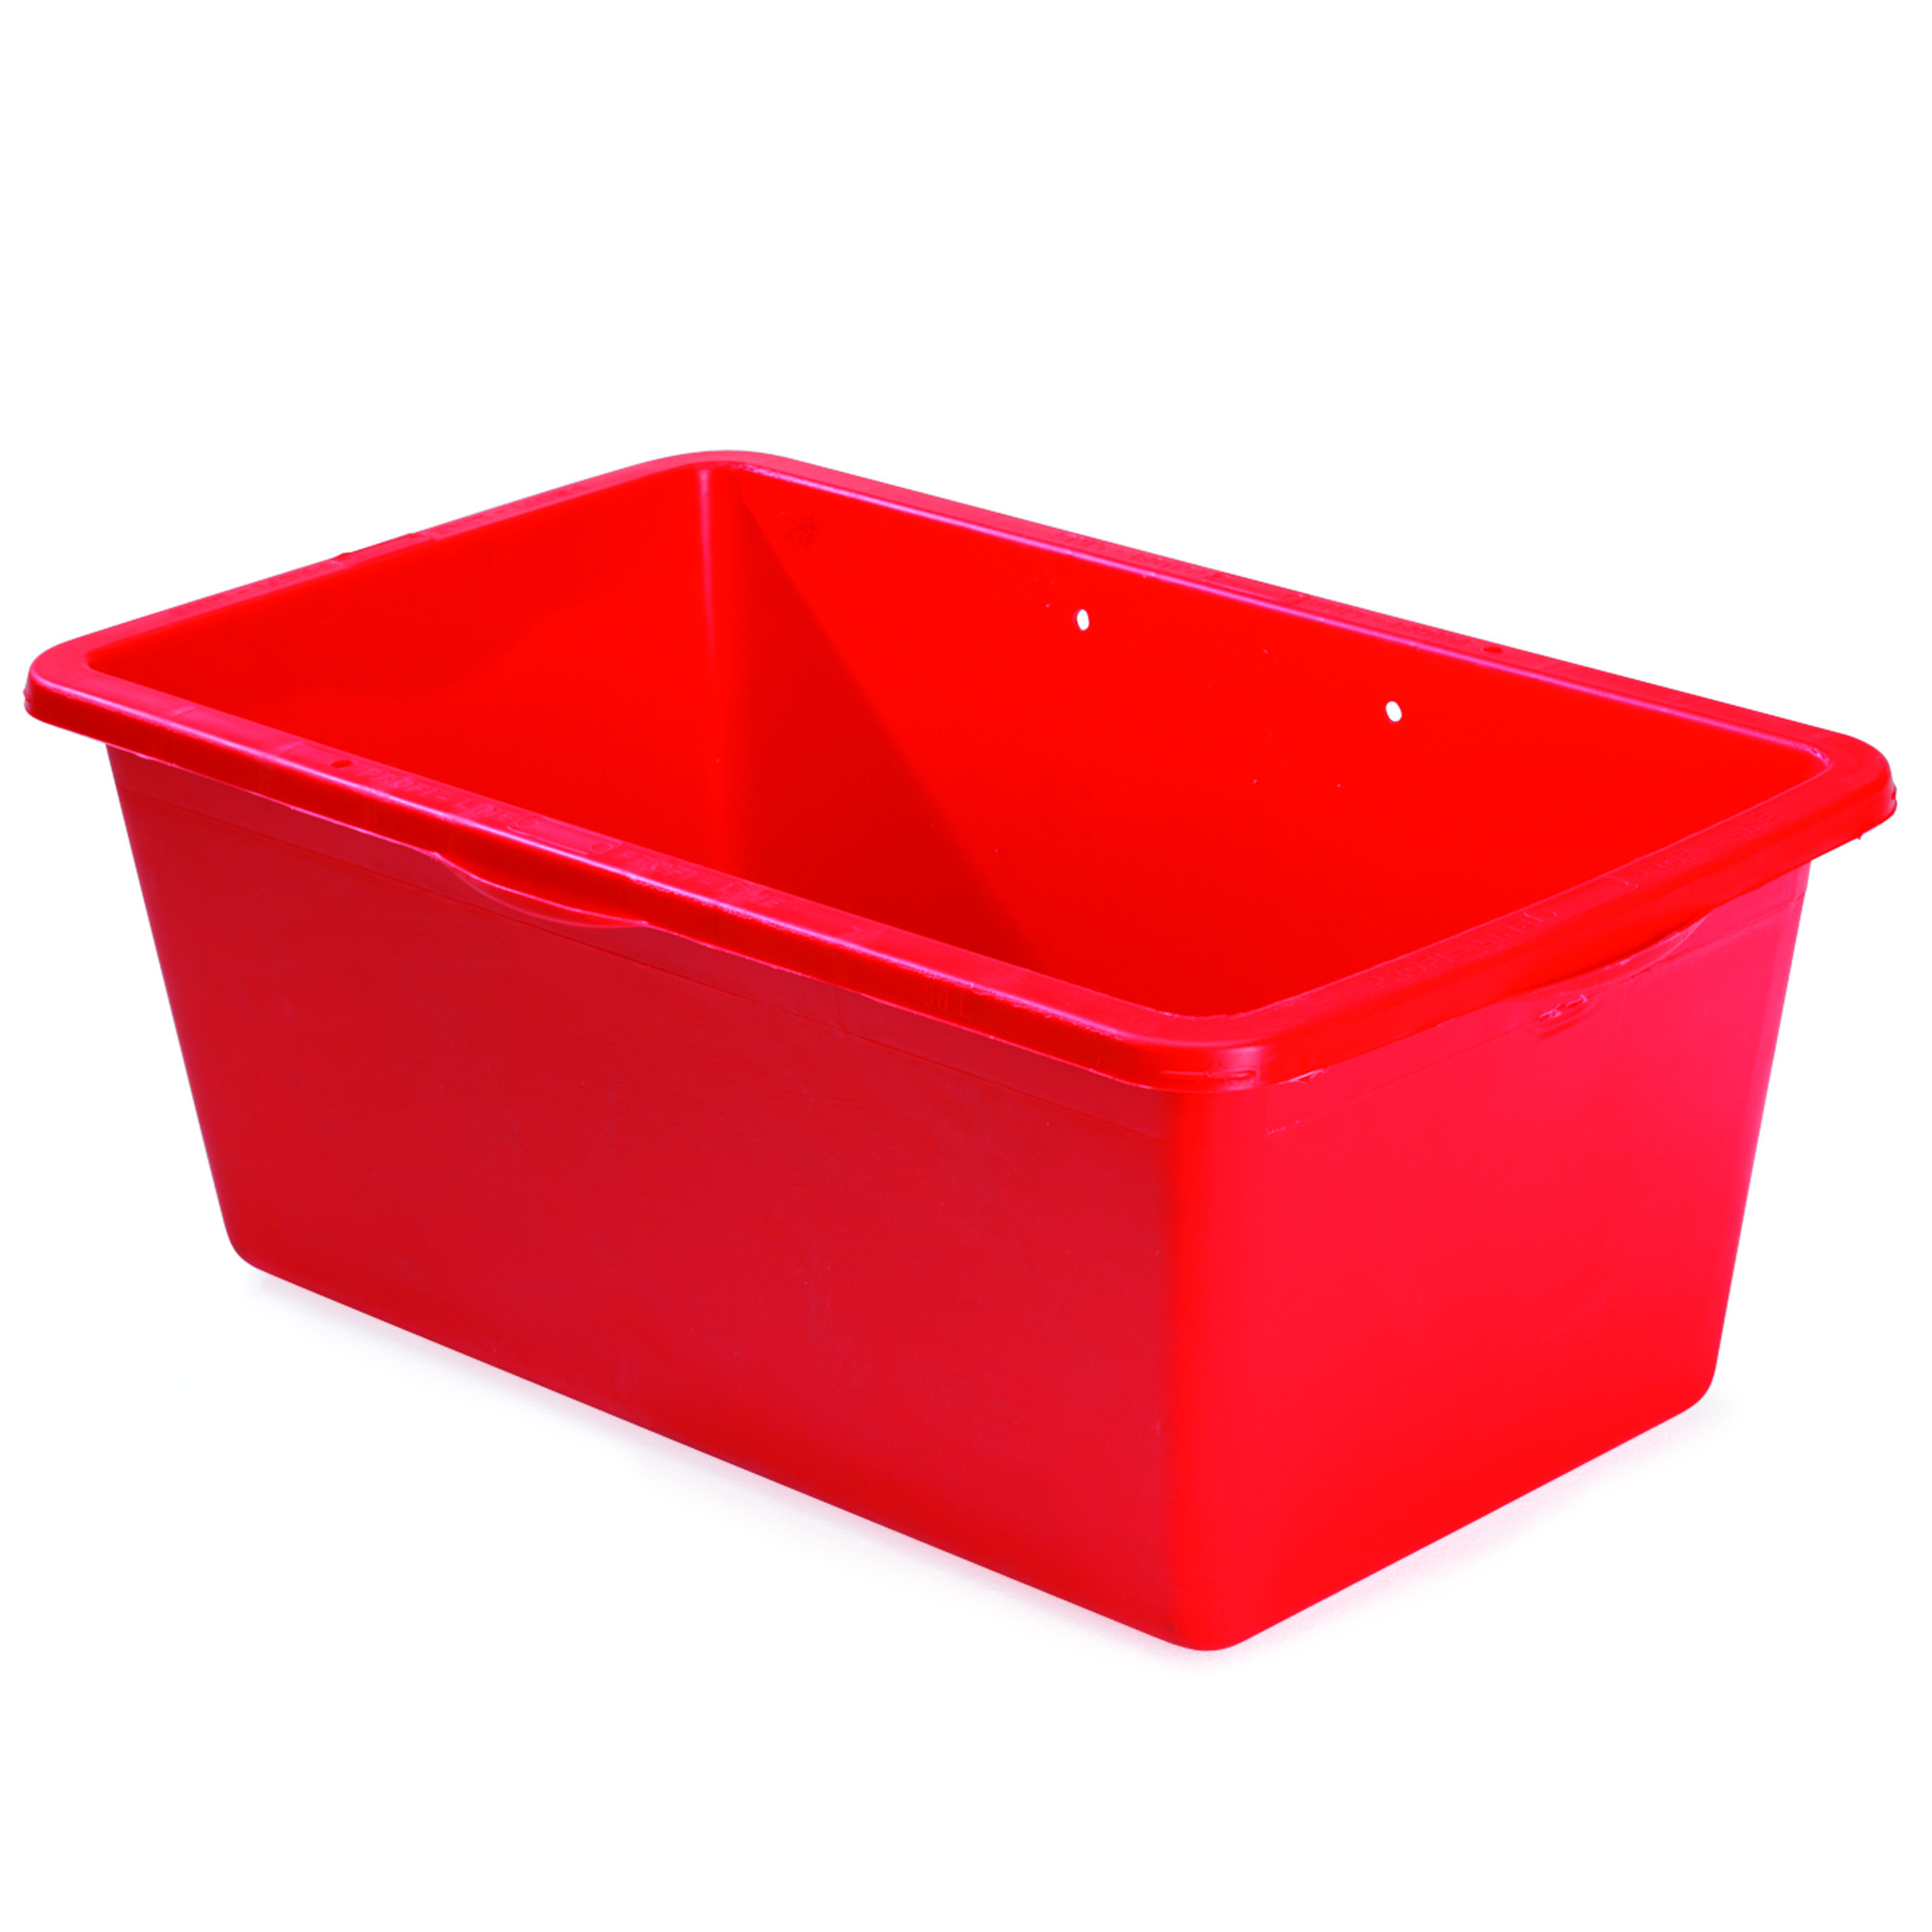 Materiaalbox rood